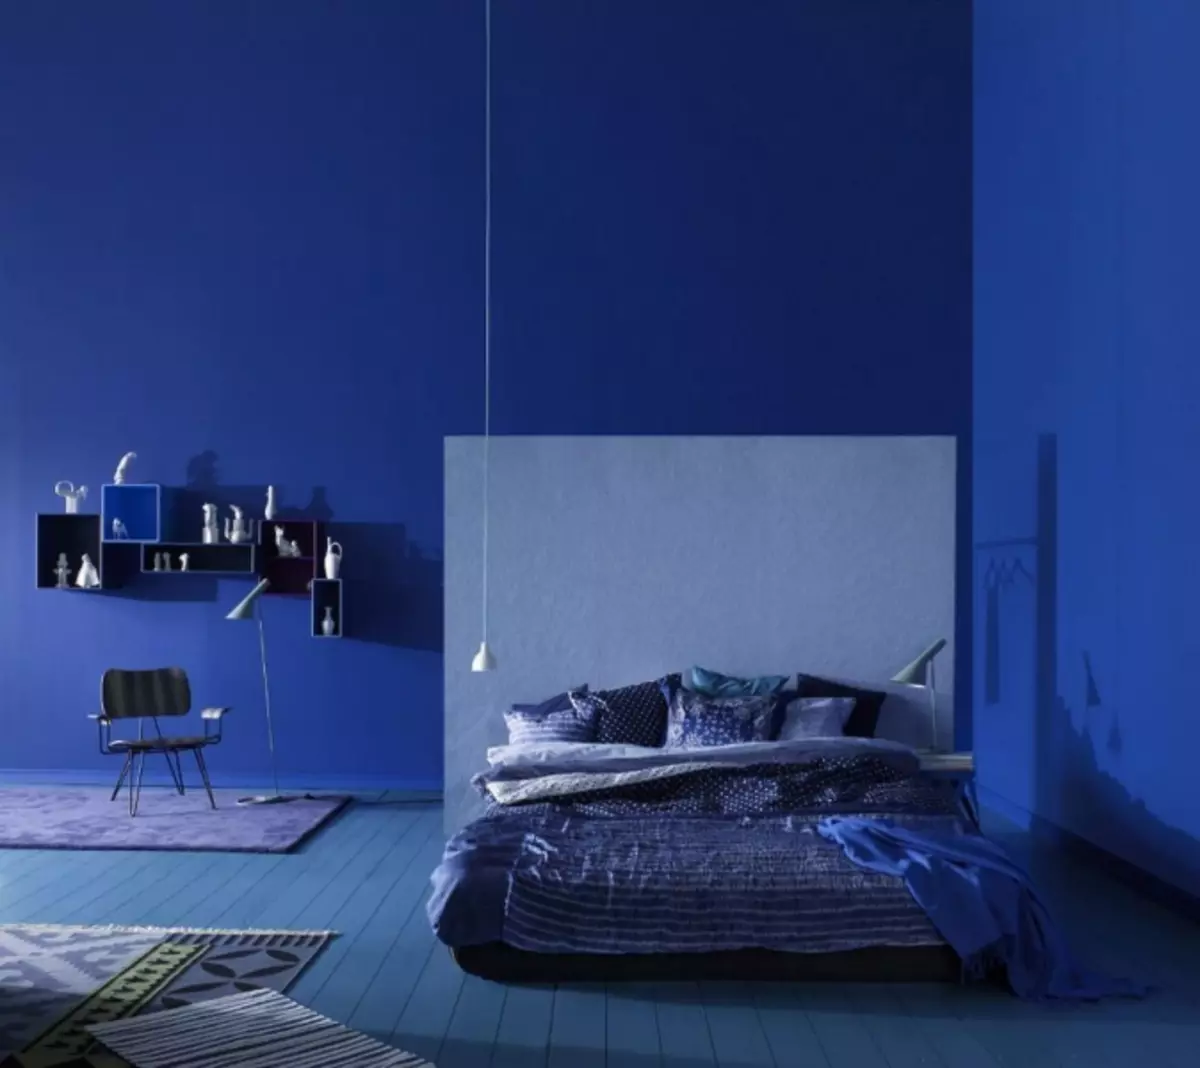 Modra ozadje: fotografija za stene, v notranjosti, temno barvo, belo ozadje, soba z zlatom, črno s cvetjem, sivi, modri, zeleni, video